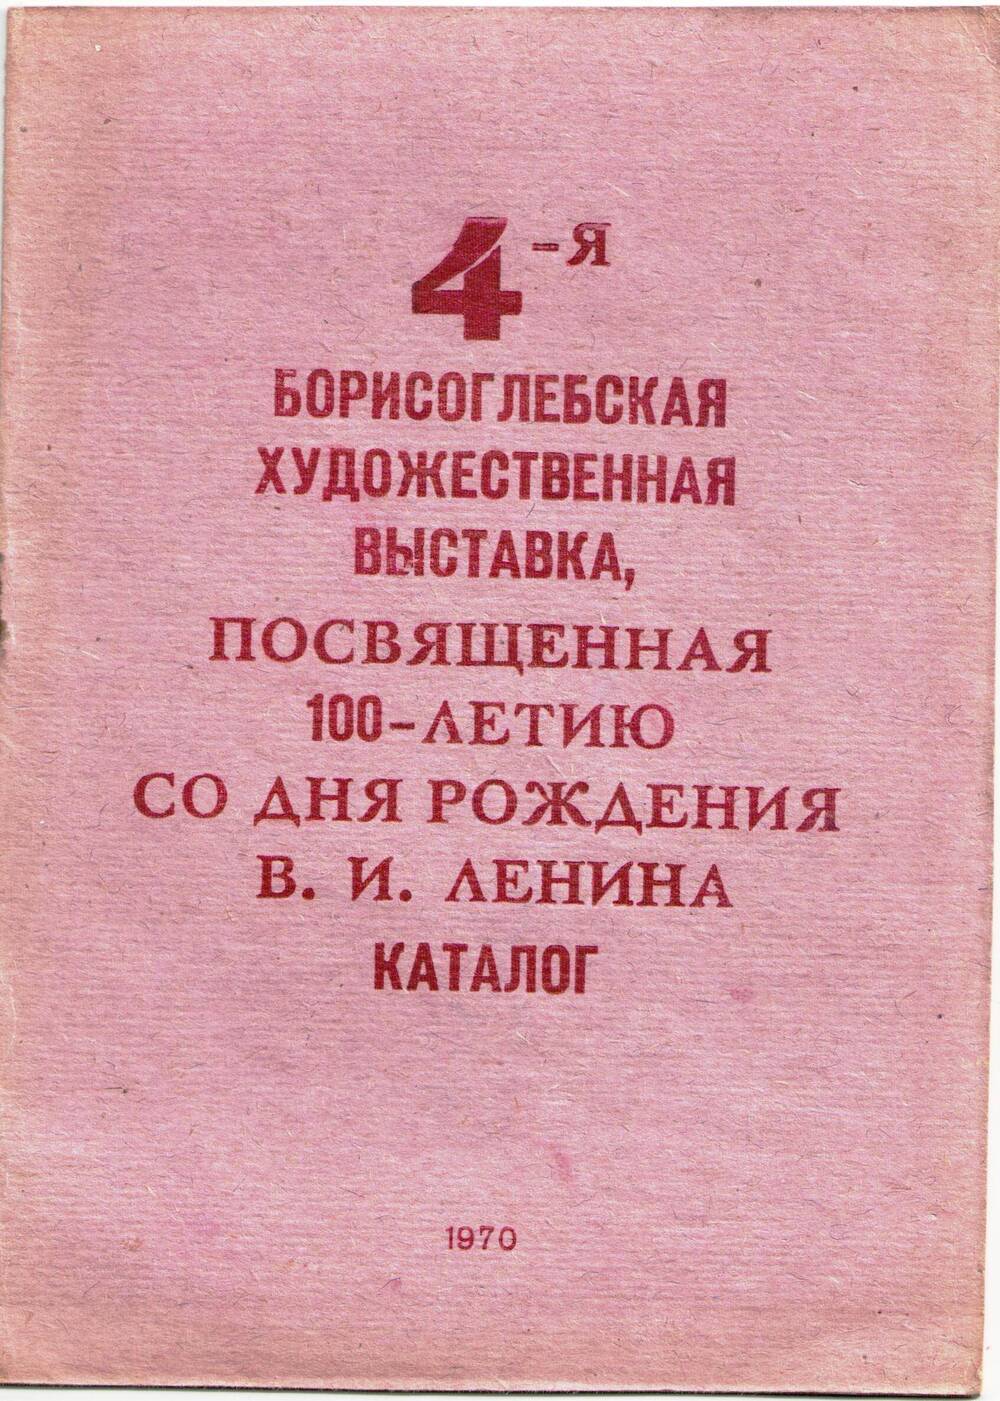 Каталог 4-ой Борисоглебской художественной выставки, посвященной 100-летию со дня рождения В.И.Ленина.